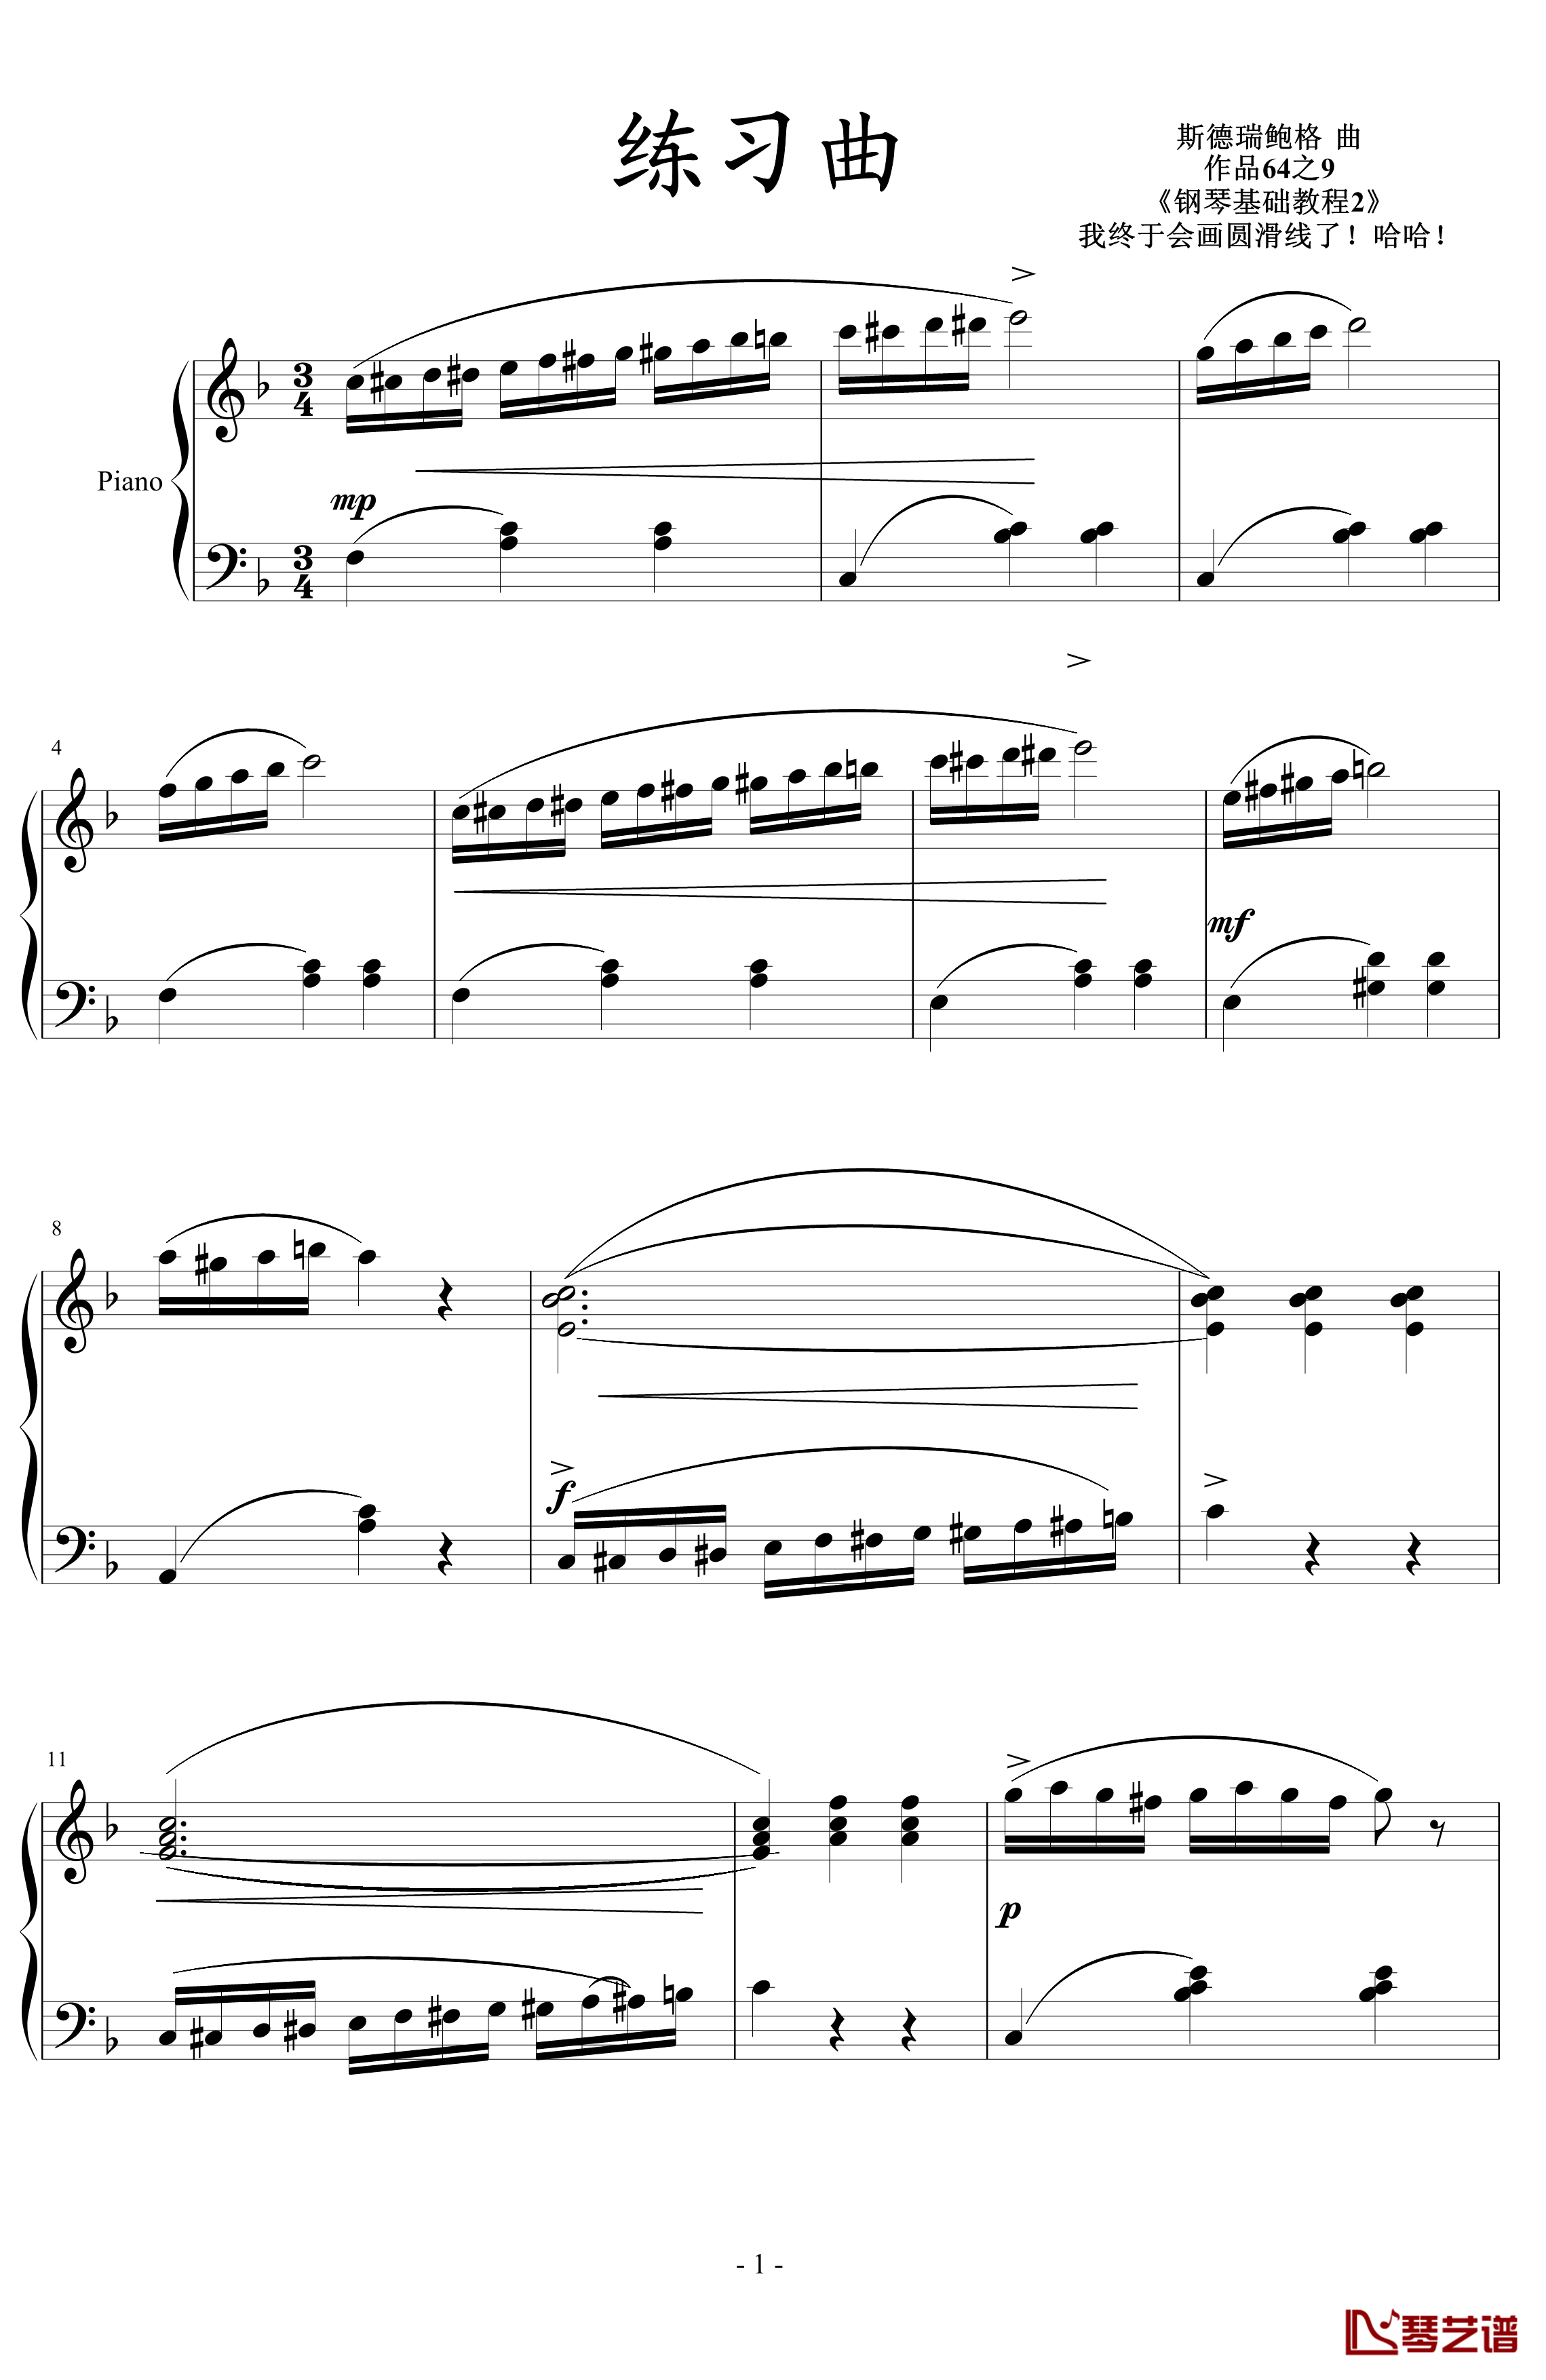 练习曲钢琴谱-斯德瑞鲍格